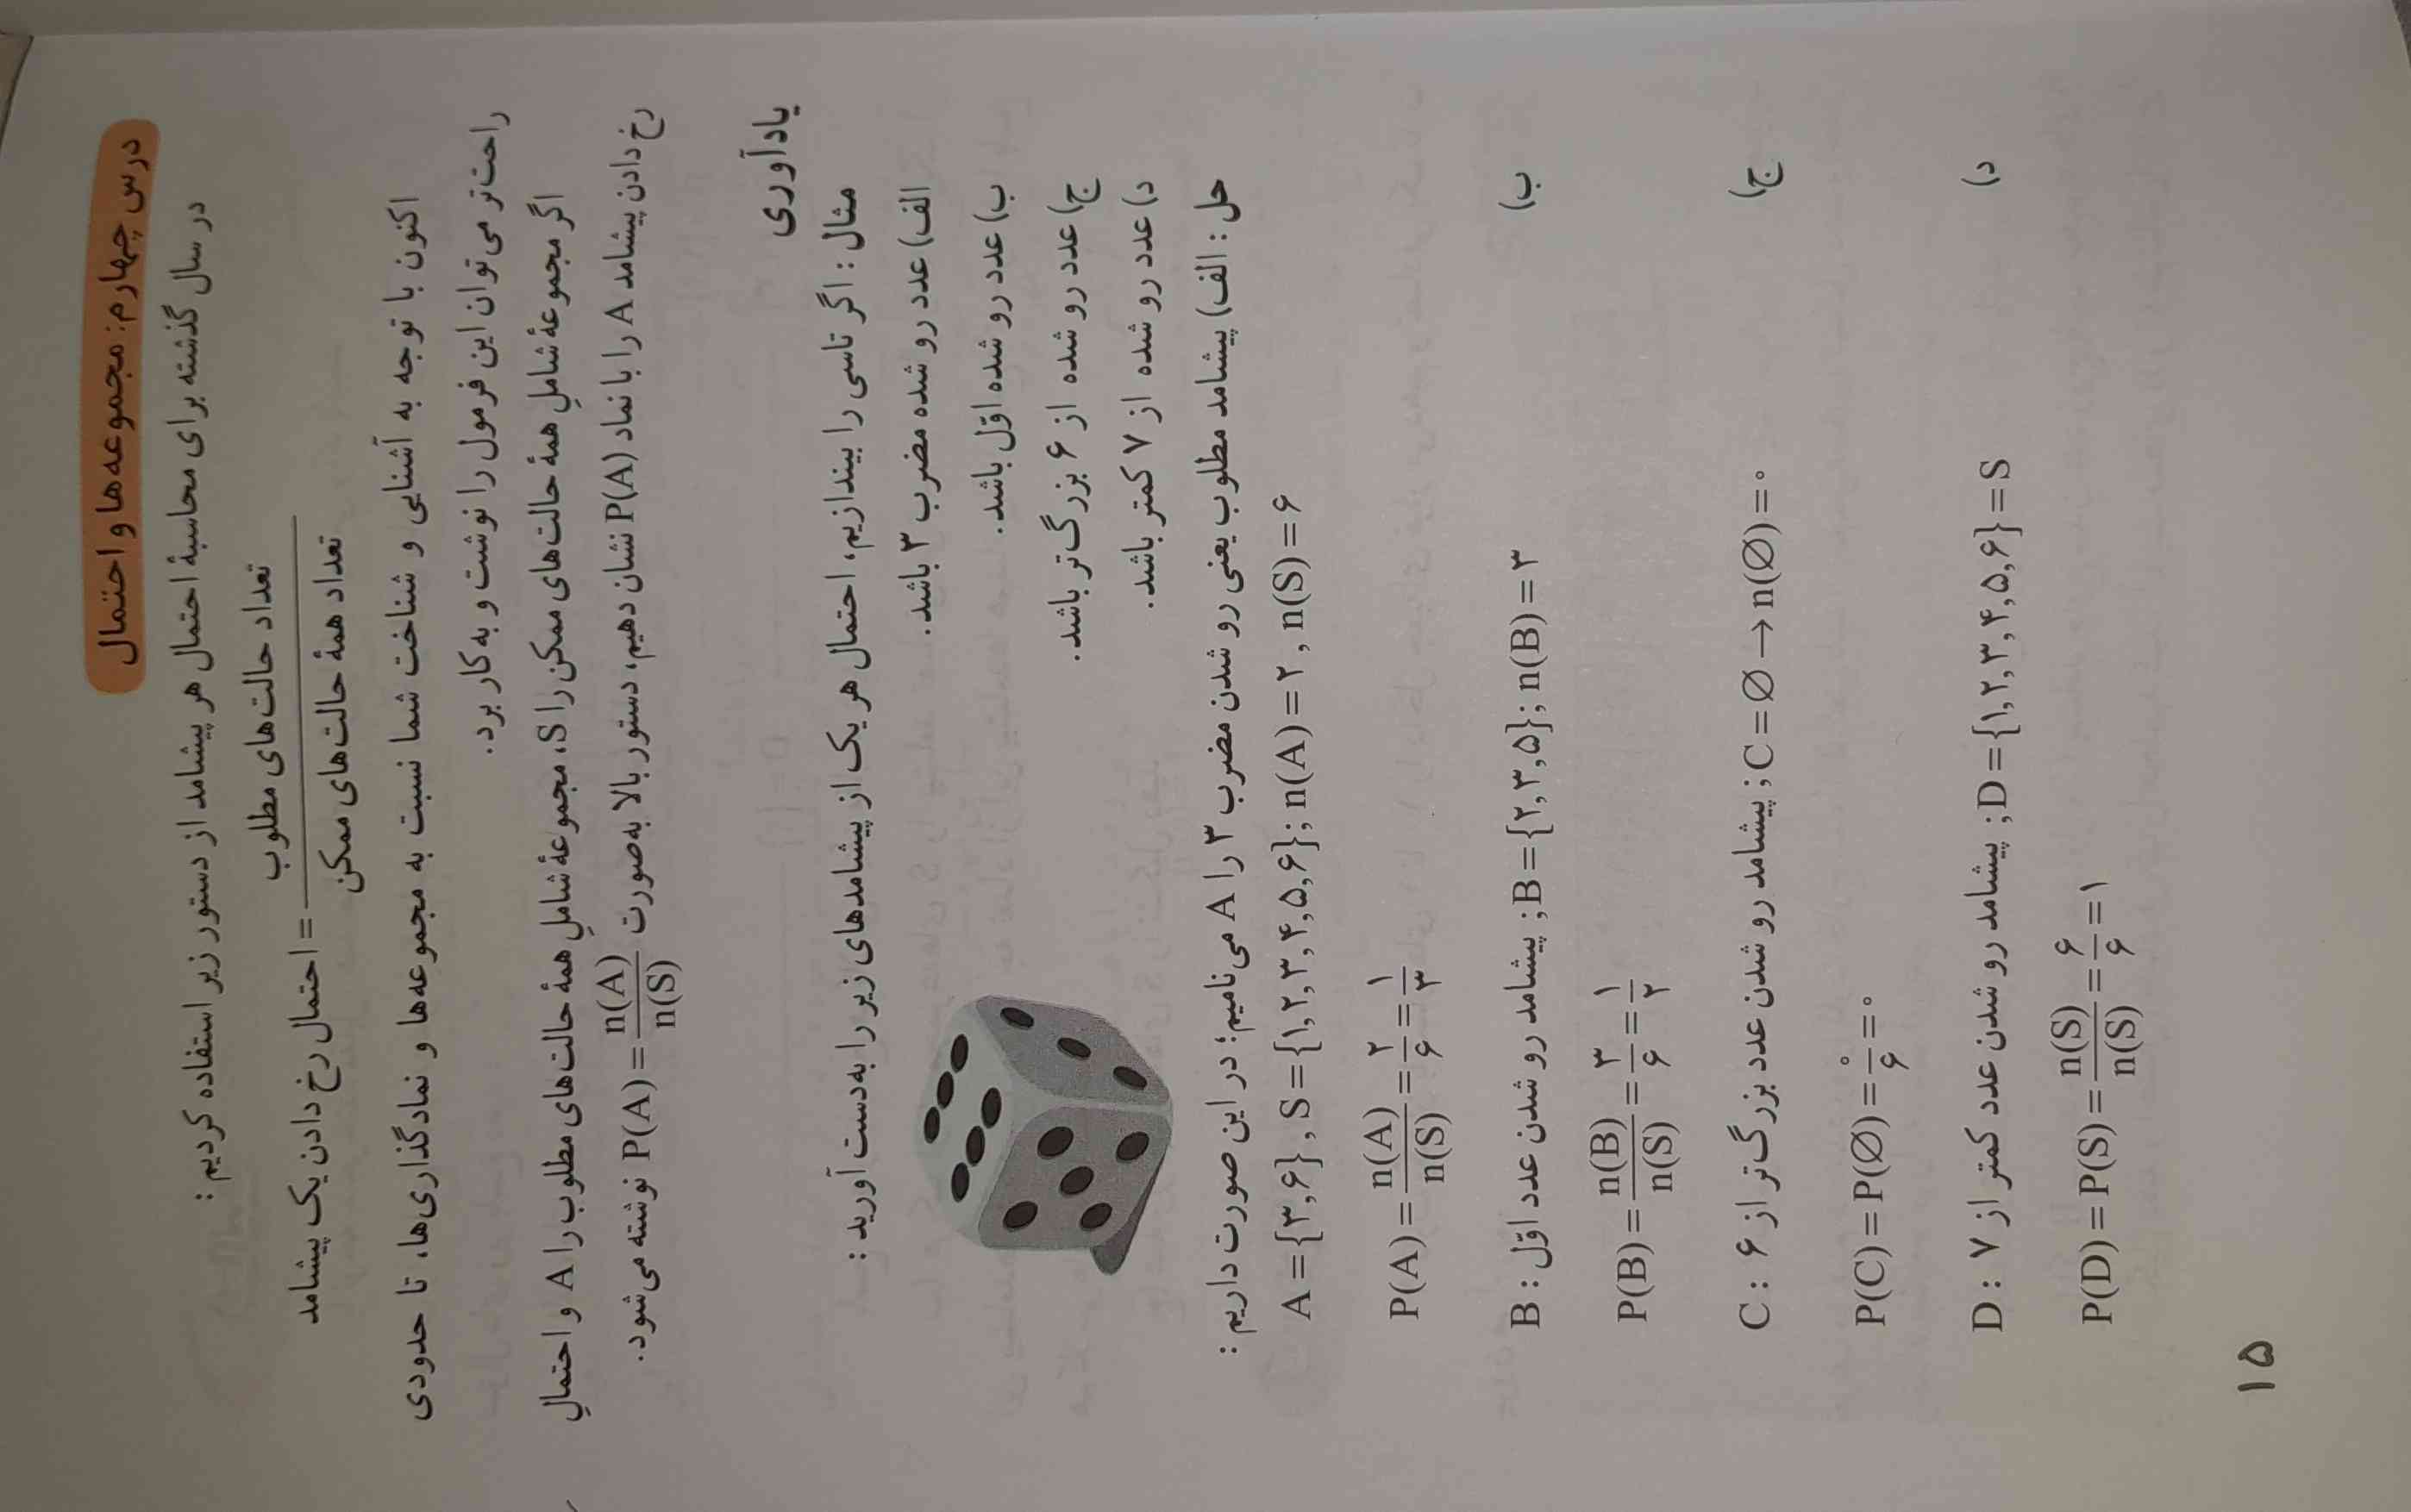 ببخشید 
من این درس رو از کتاب ریاضی نهم رو متوجه نشدم 
کسی هست که بتونه برام توضیح بدهد؟